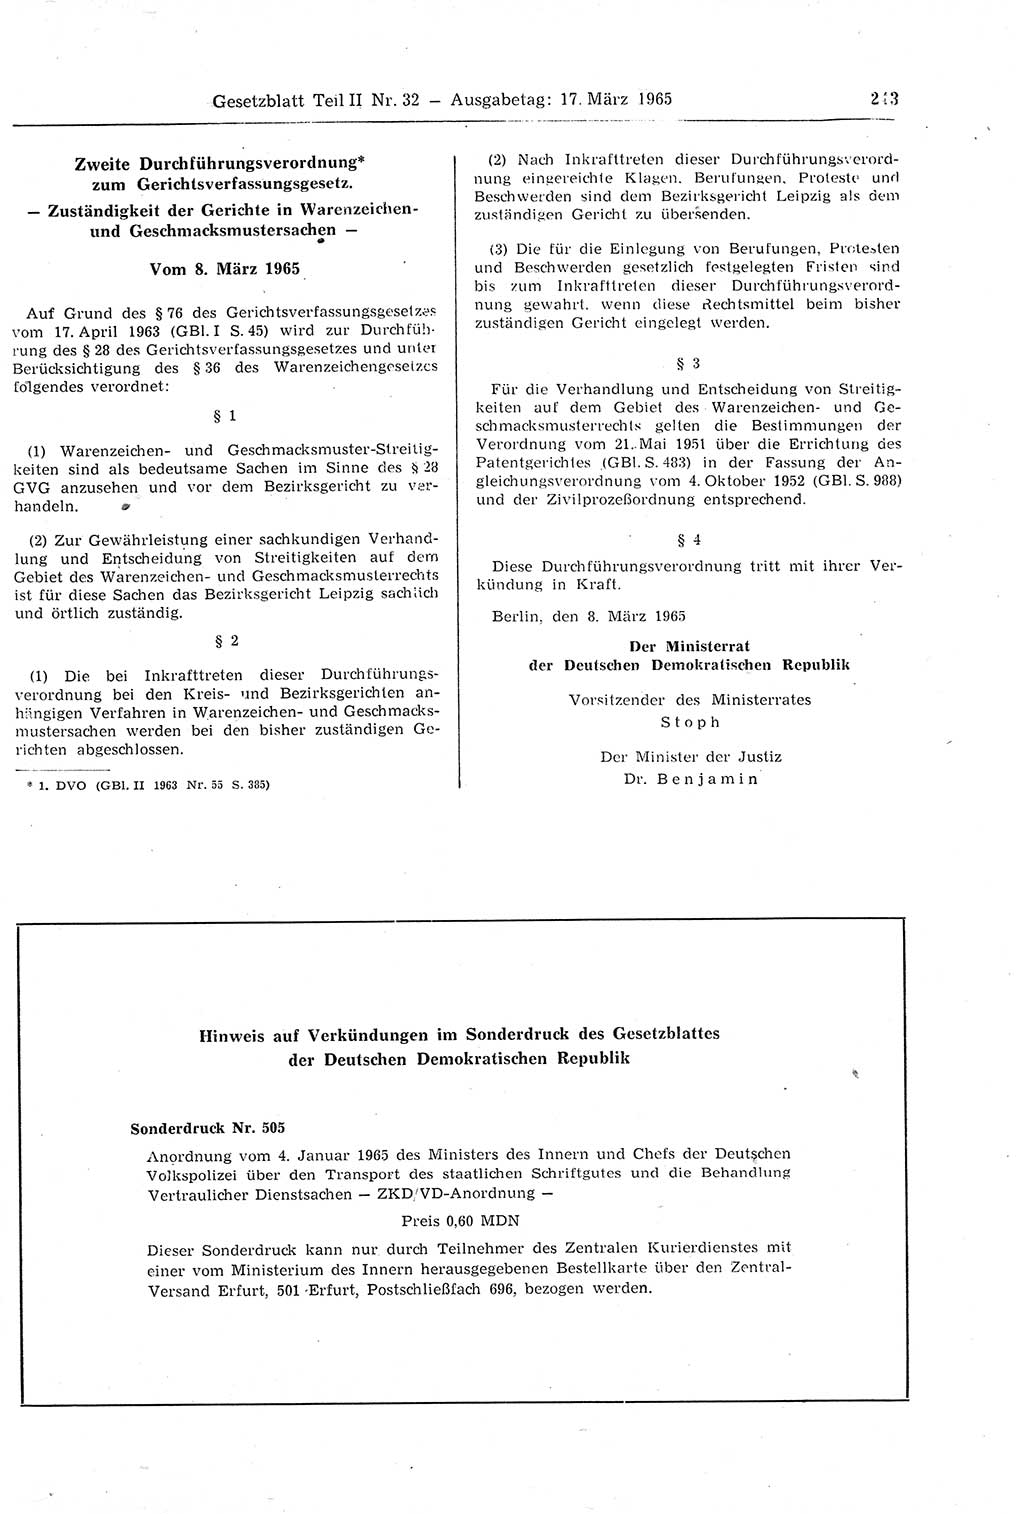 Gesetzblatt (GBl.) der Deutschen Demokratischen Republik (DDR) Teil ⅠⅠ 1965, Seite 243 (GBl. DDR ⅠⅠ 1965, S. 243)